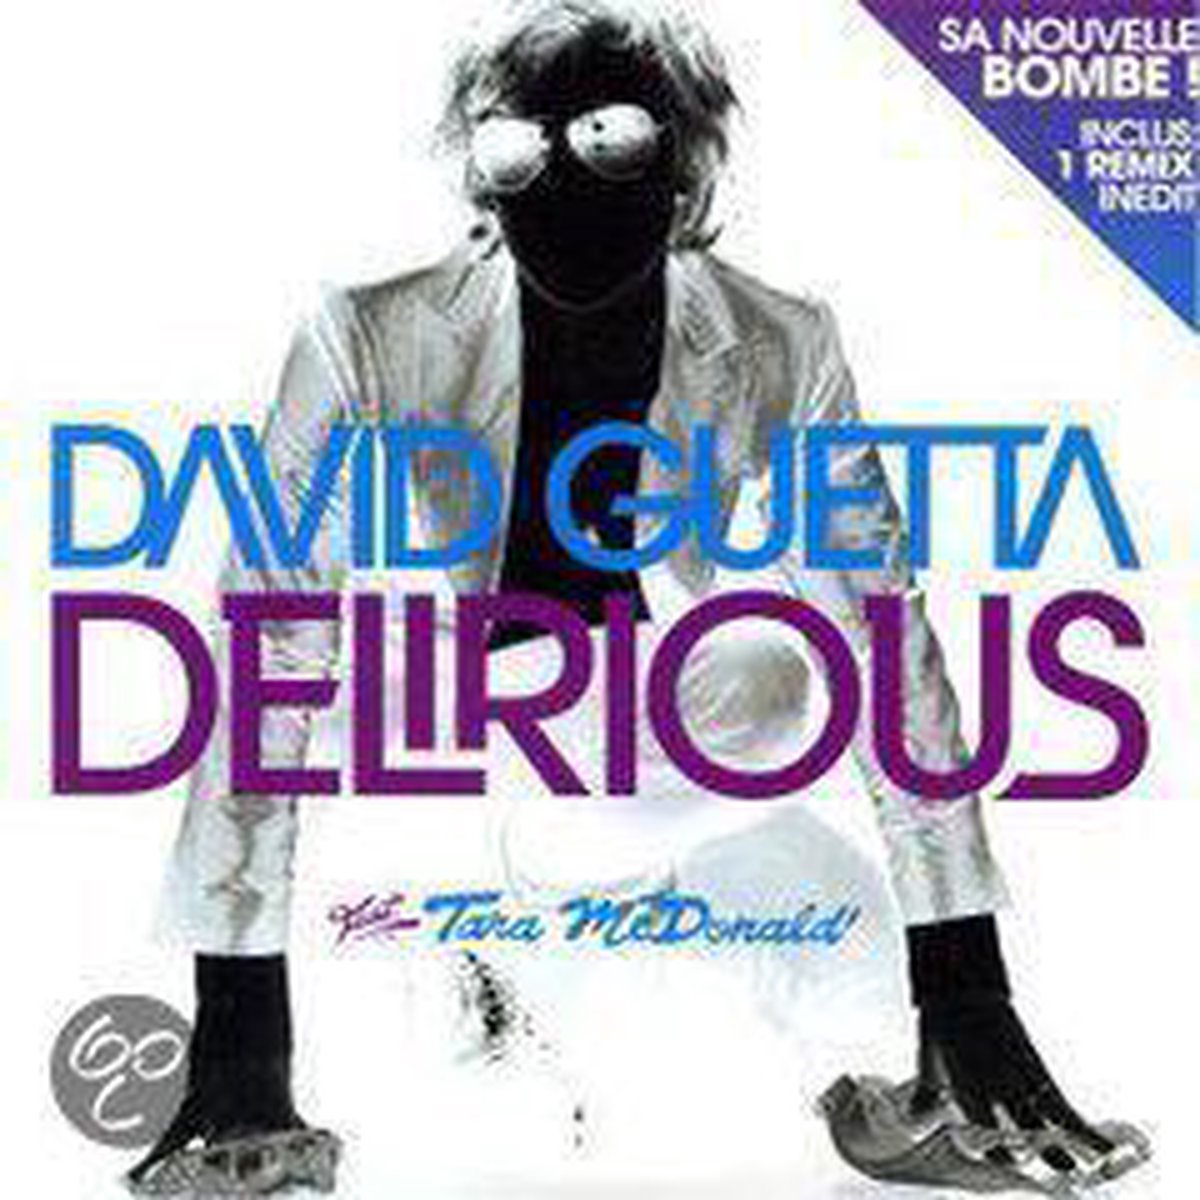 Delirious - David Guetta